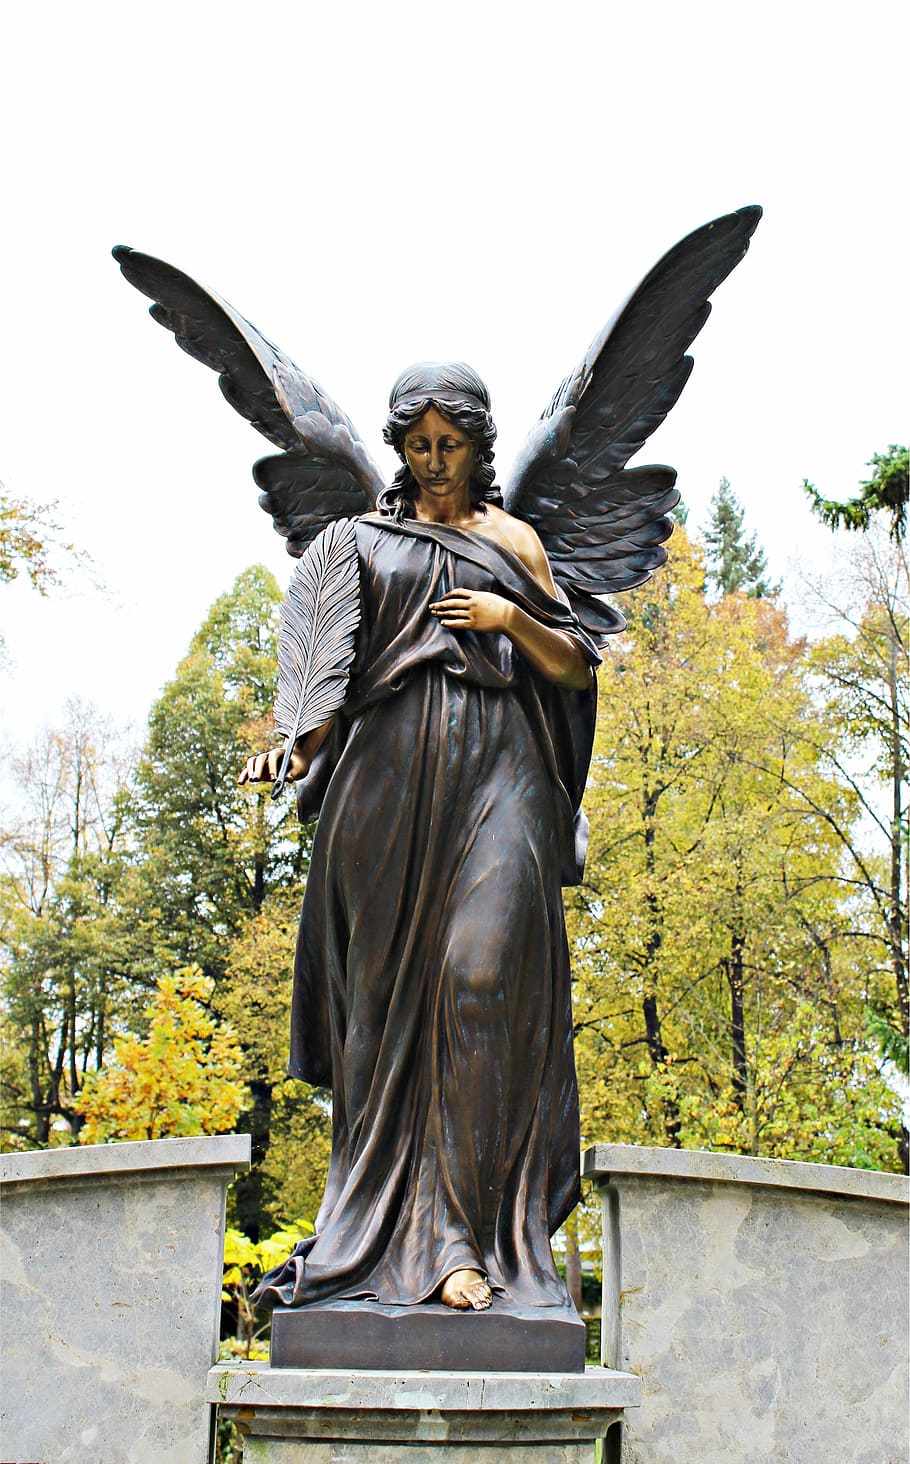 de pie, hembra, estatua del ángel, día, ángel, escultura, estatua de bronce, cementerio, bronce, tumba